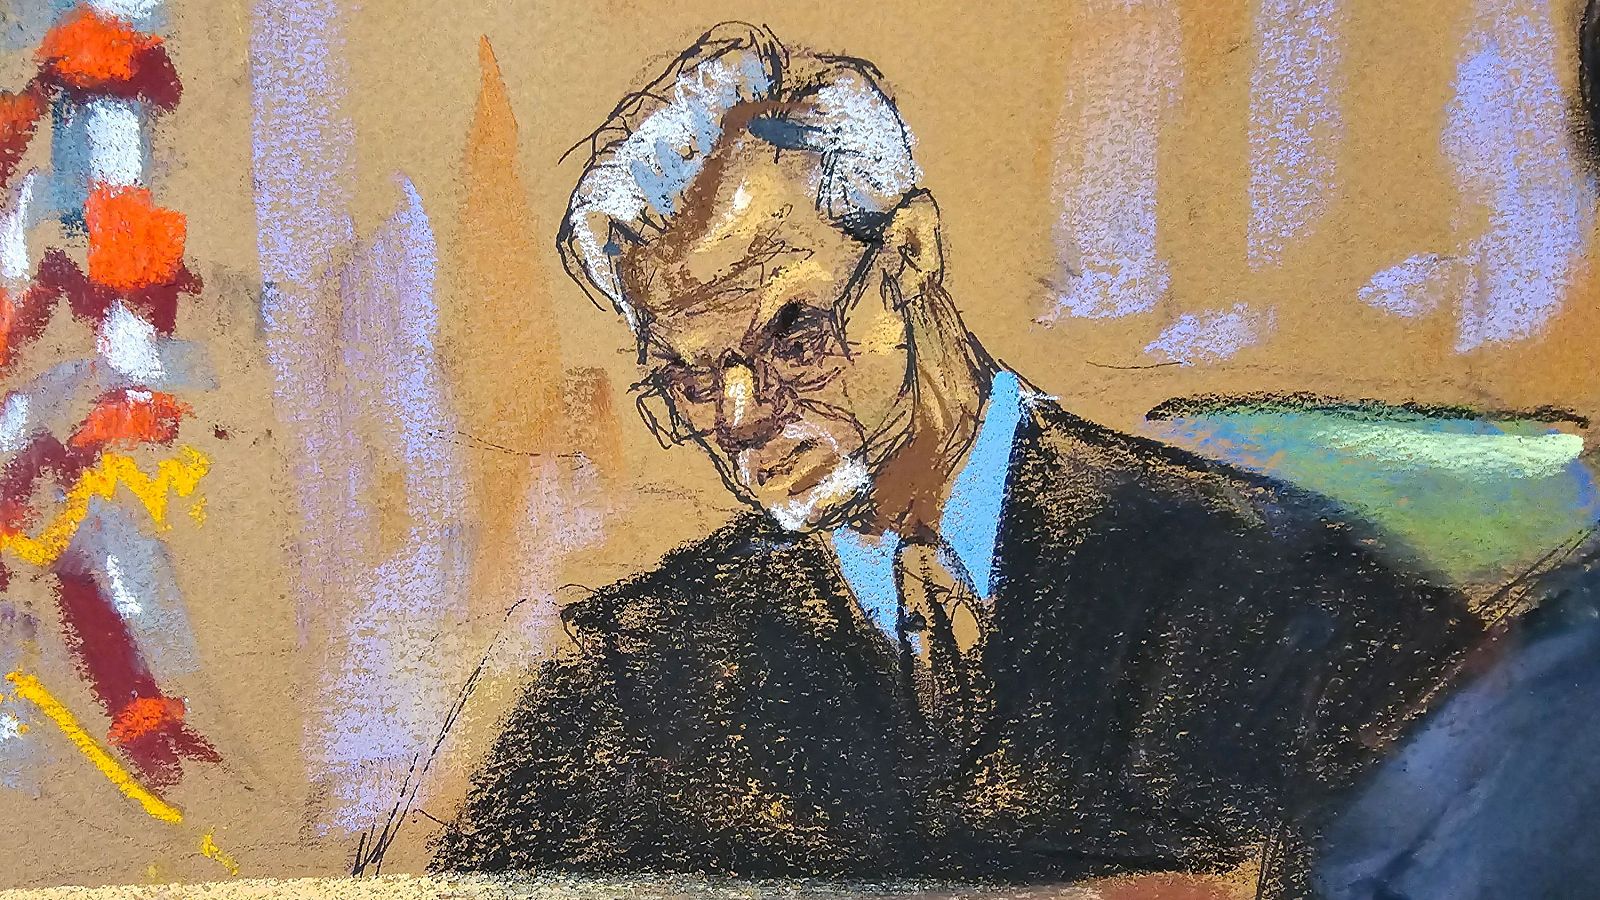 El juez que instruye el caso de Trump amenaza con llevarlo a prisión por sus insultos al jurado